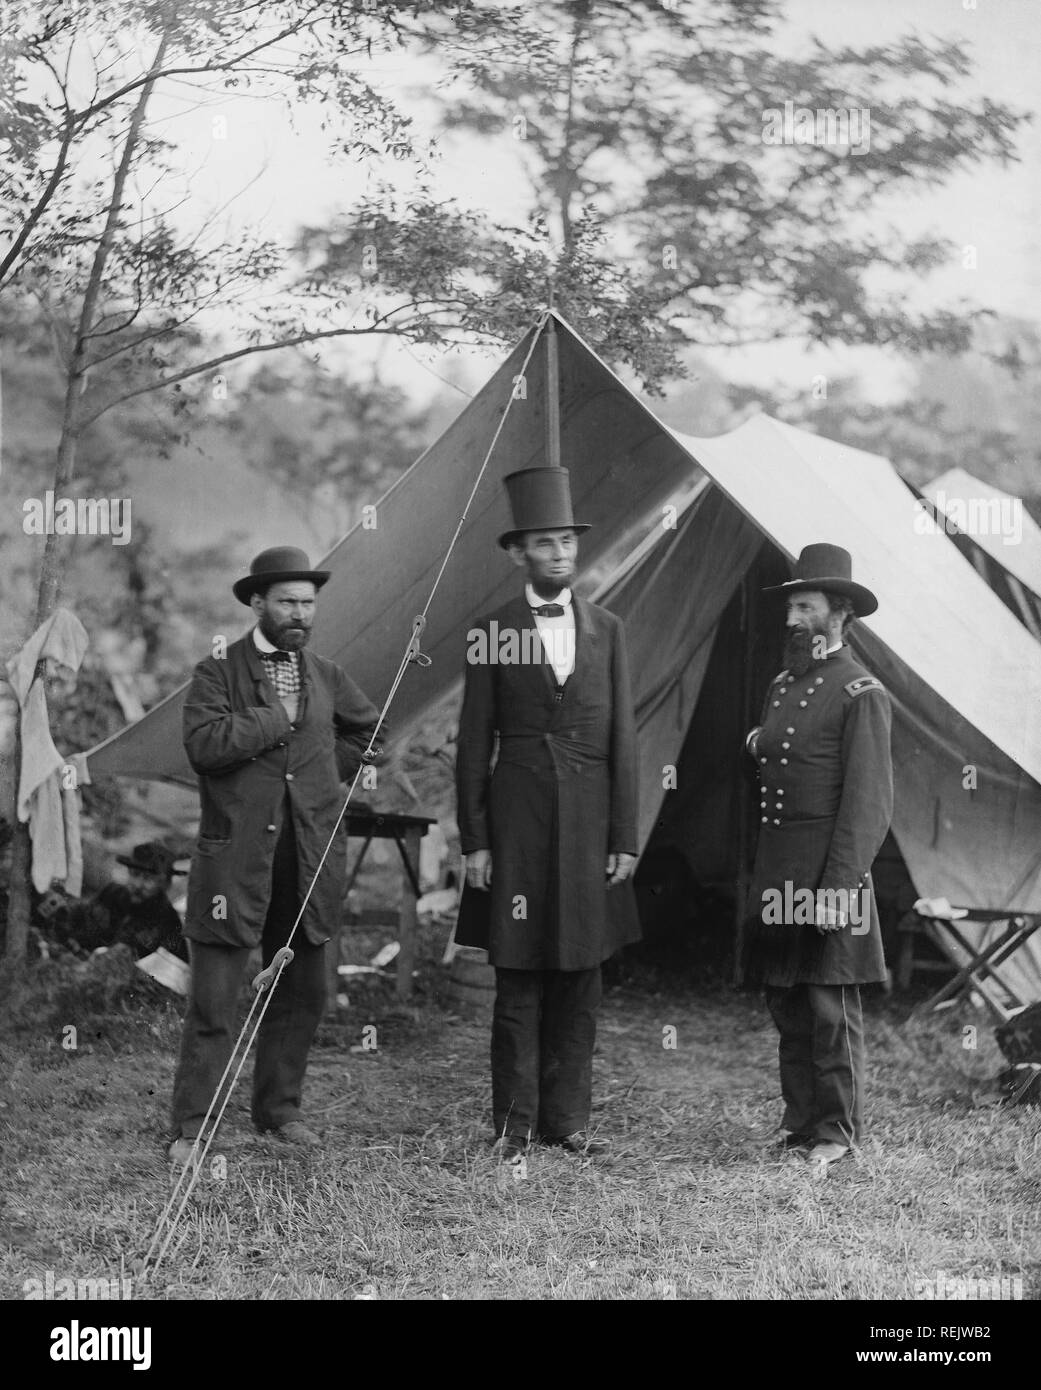 Allan Pinkerton, le président américain Lincoln, et le Major général John A. McClernand, Portrait, Antietam, Maryland, USA, par Alexander Gardner, Octobre 1862 Banque D'Images